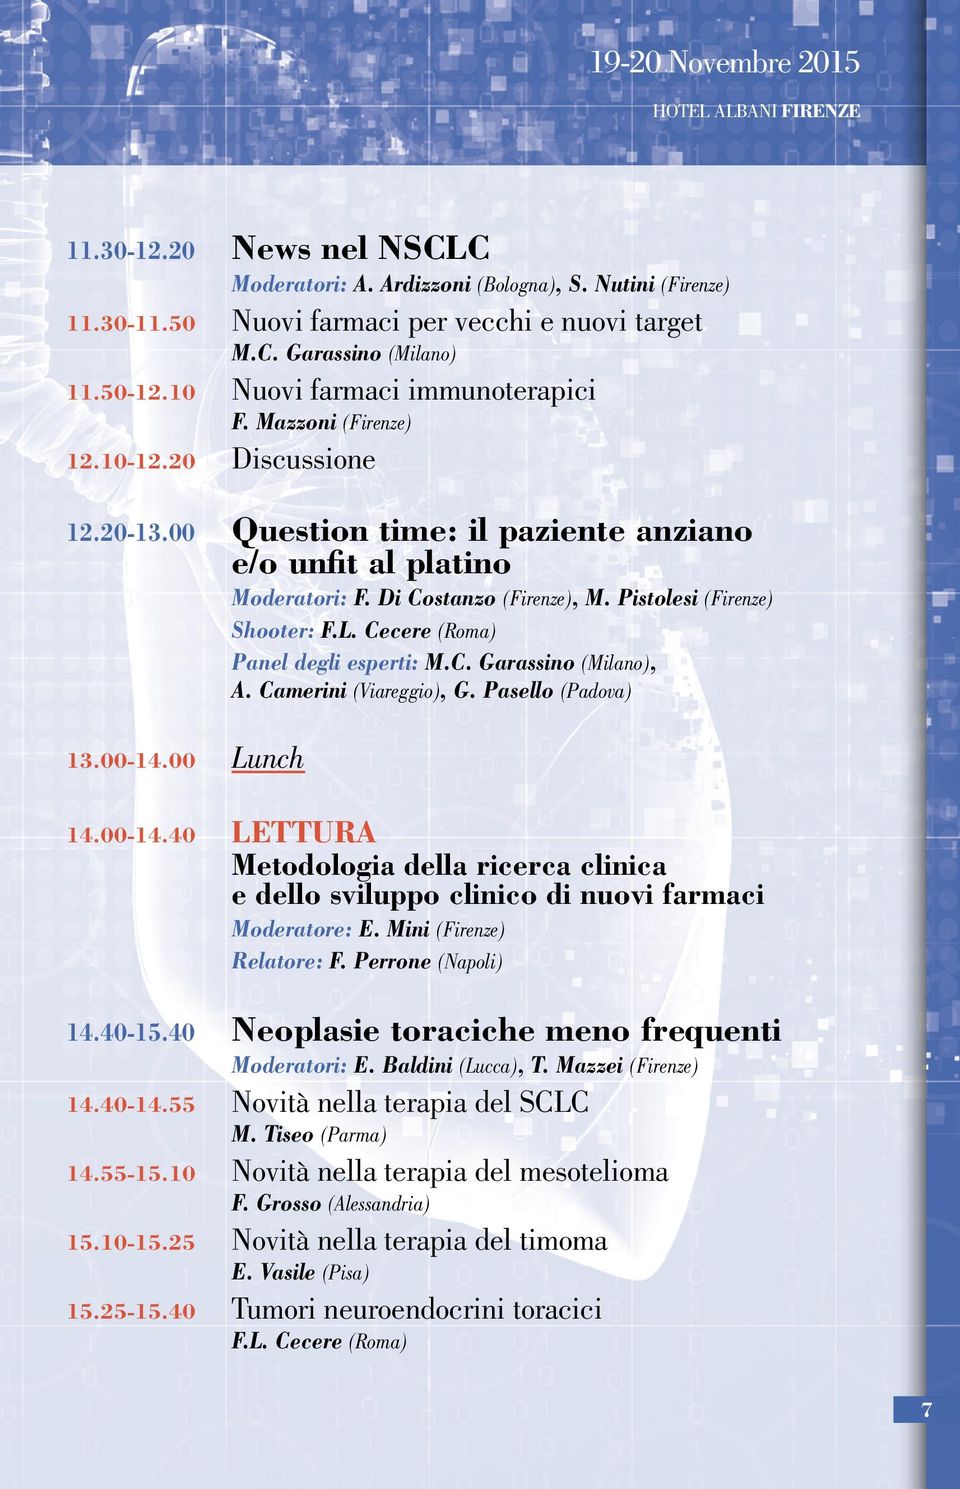 Pistolesi (Firenze) Shooter: F.L. Cecere (Roma) Panel degli esperti: M.C. Garassino (Milano), A. Camerini (Viareggio), G. Pasello (Padova) 13.00-14.